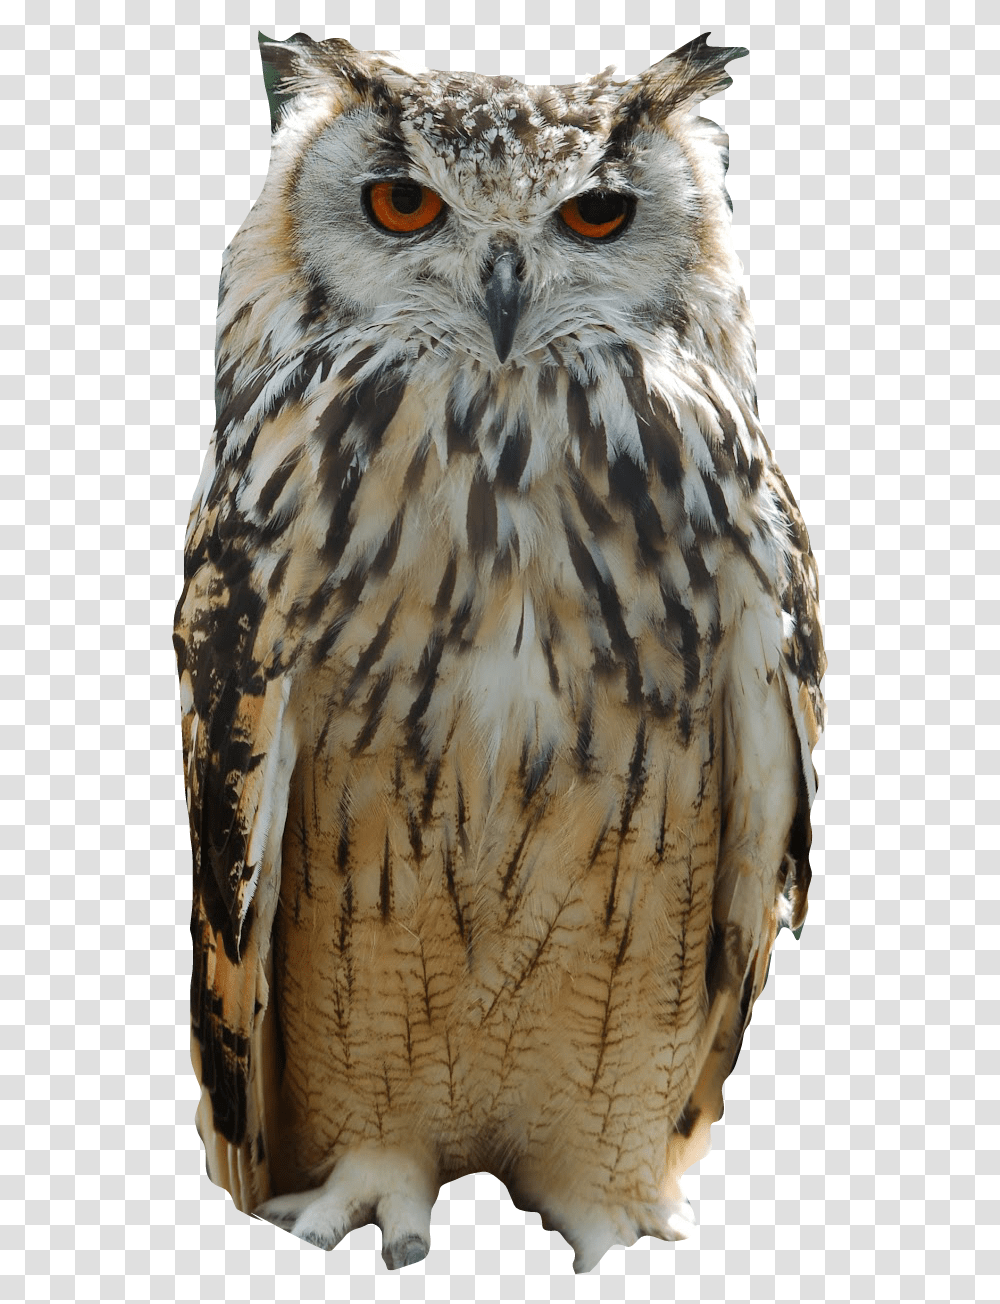 Naturebuho Freetoedit Owl Indian, Bird, Animal, Buzzard, Hawk Transparent Png